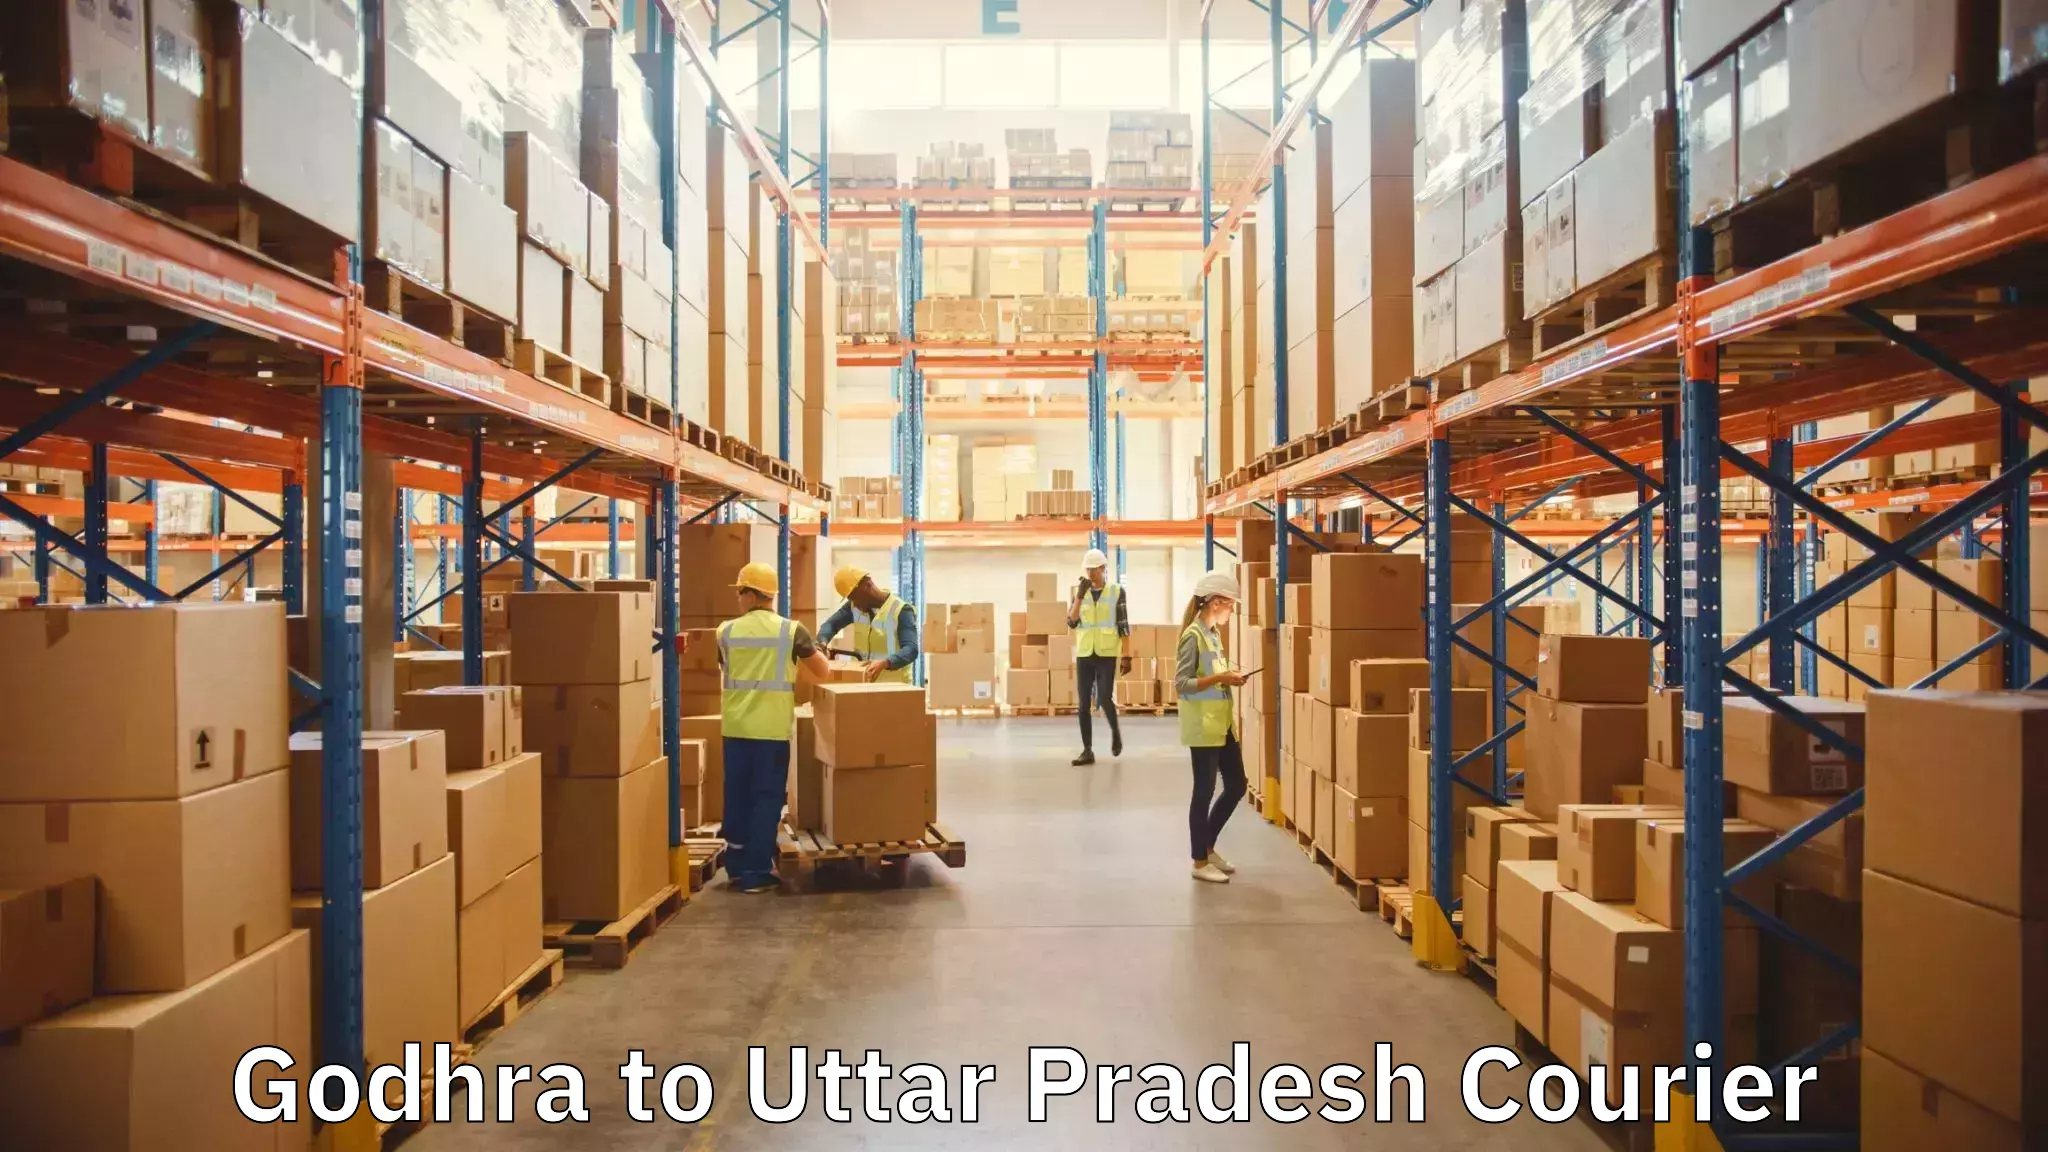 Trusted moving company Godhra to IIT Varanasi